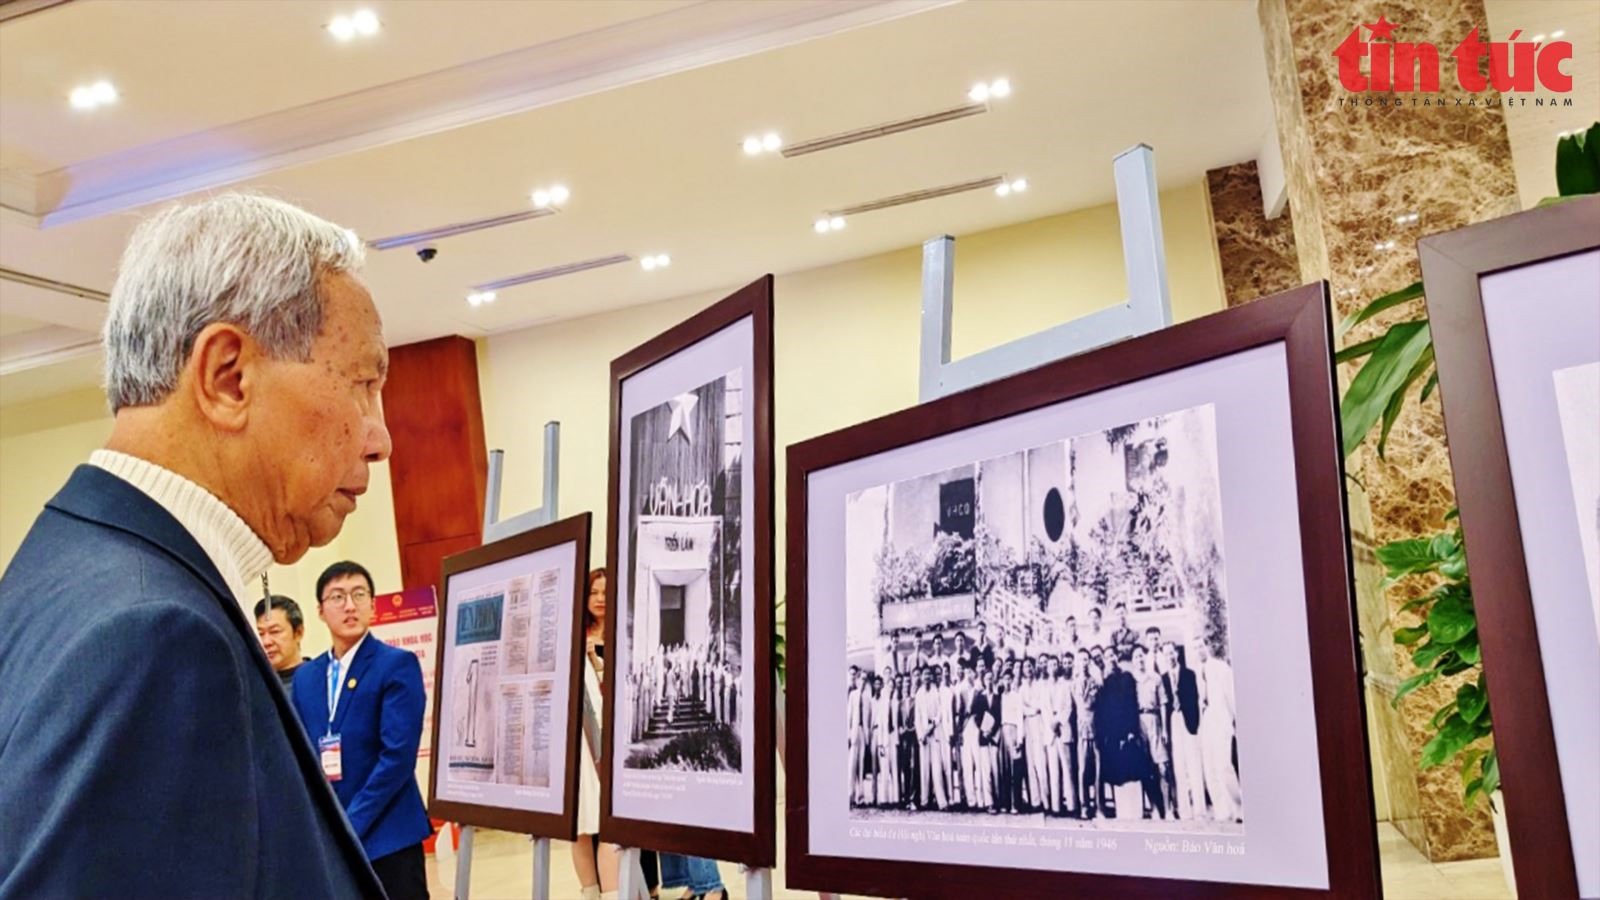 Triển lãm cung cấp những hiểu biết về ý nghĩa lịch sử, ý nghĩa thời đại, những giá trị to lớn và tầm ảnh hưởng của Đề cương về văn hóa Việt Nam trong 80 năm qua. Ảnh: L.Sơn